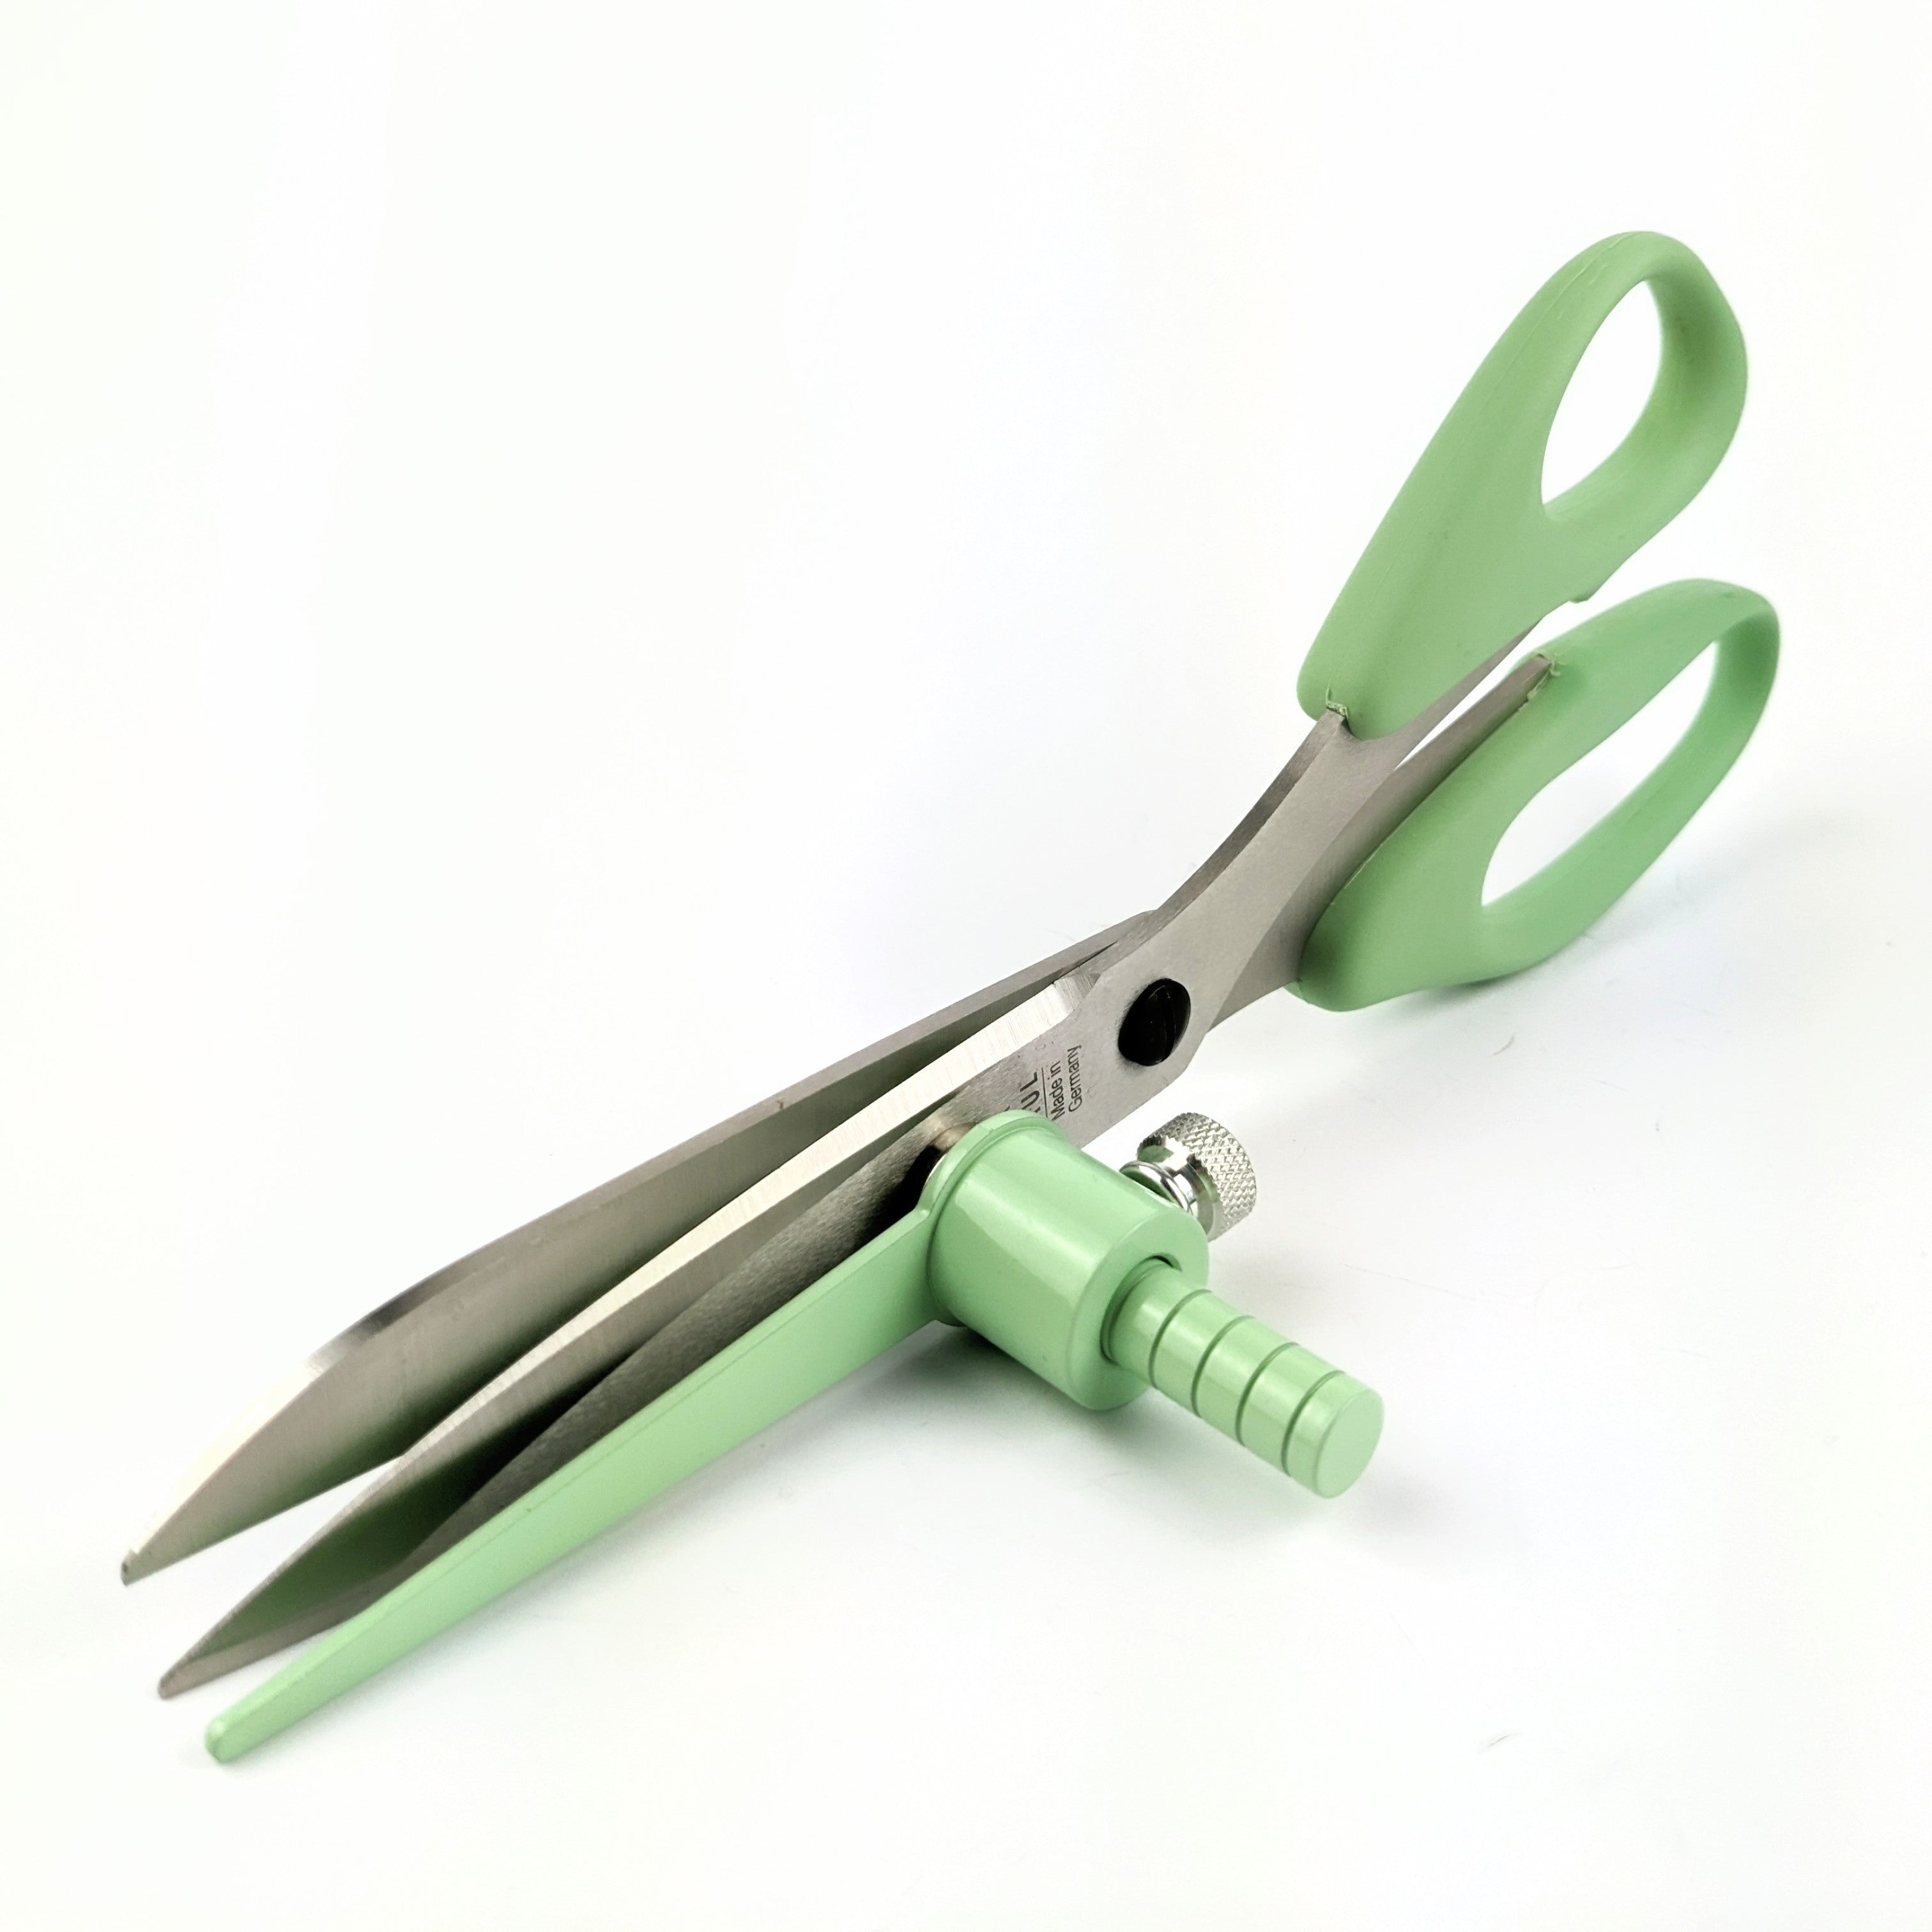 Large scissors set (color edition)